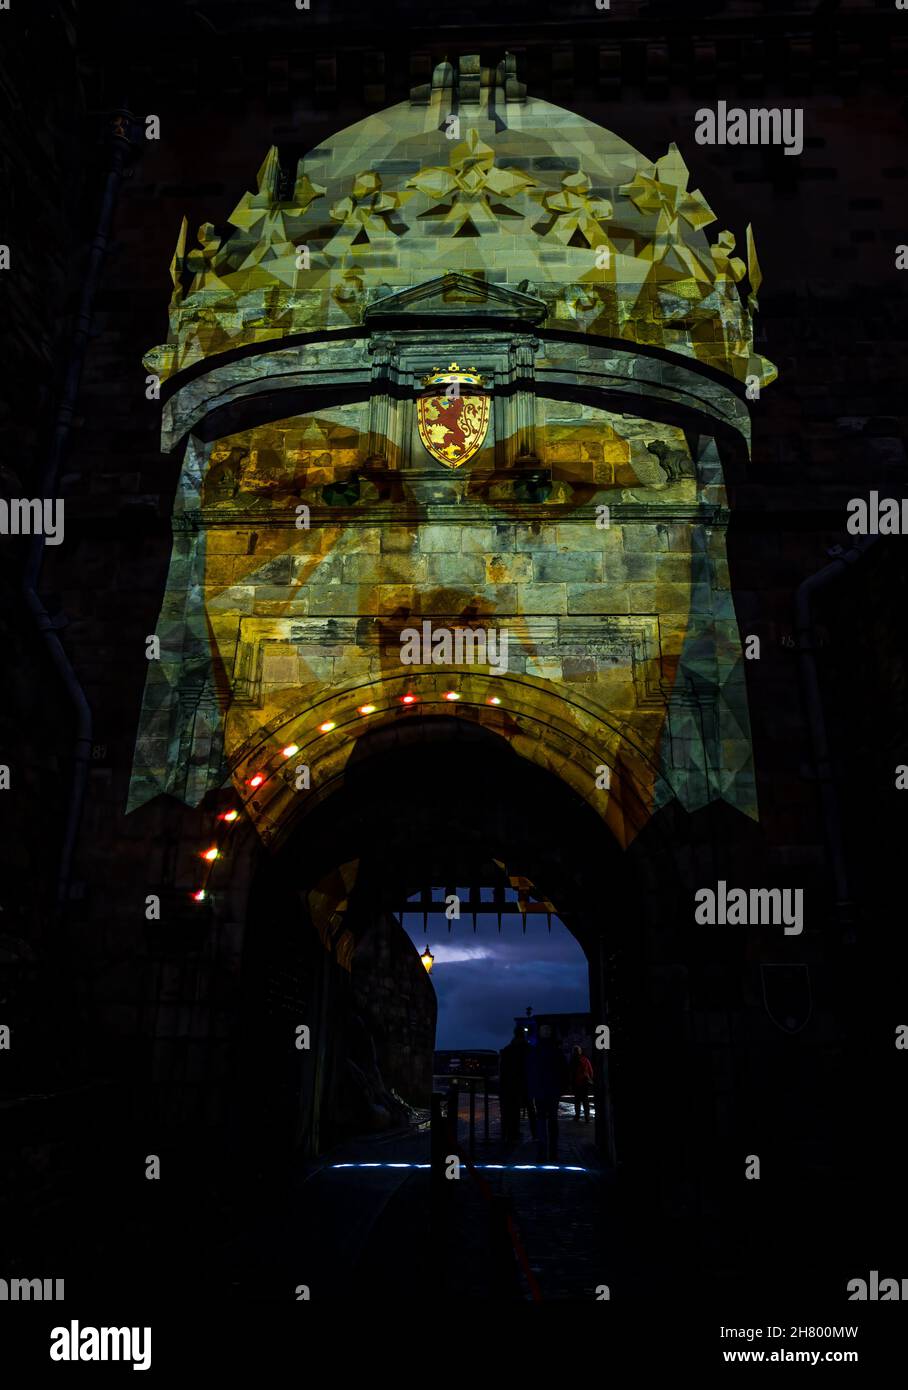 Castle of Light Bildprojektion des Königs mit Krone auf Portcullis-Tor bei Nacht, Edinburgh Castle, Schottland, Großbritannien Stockfoto